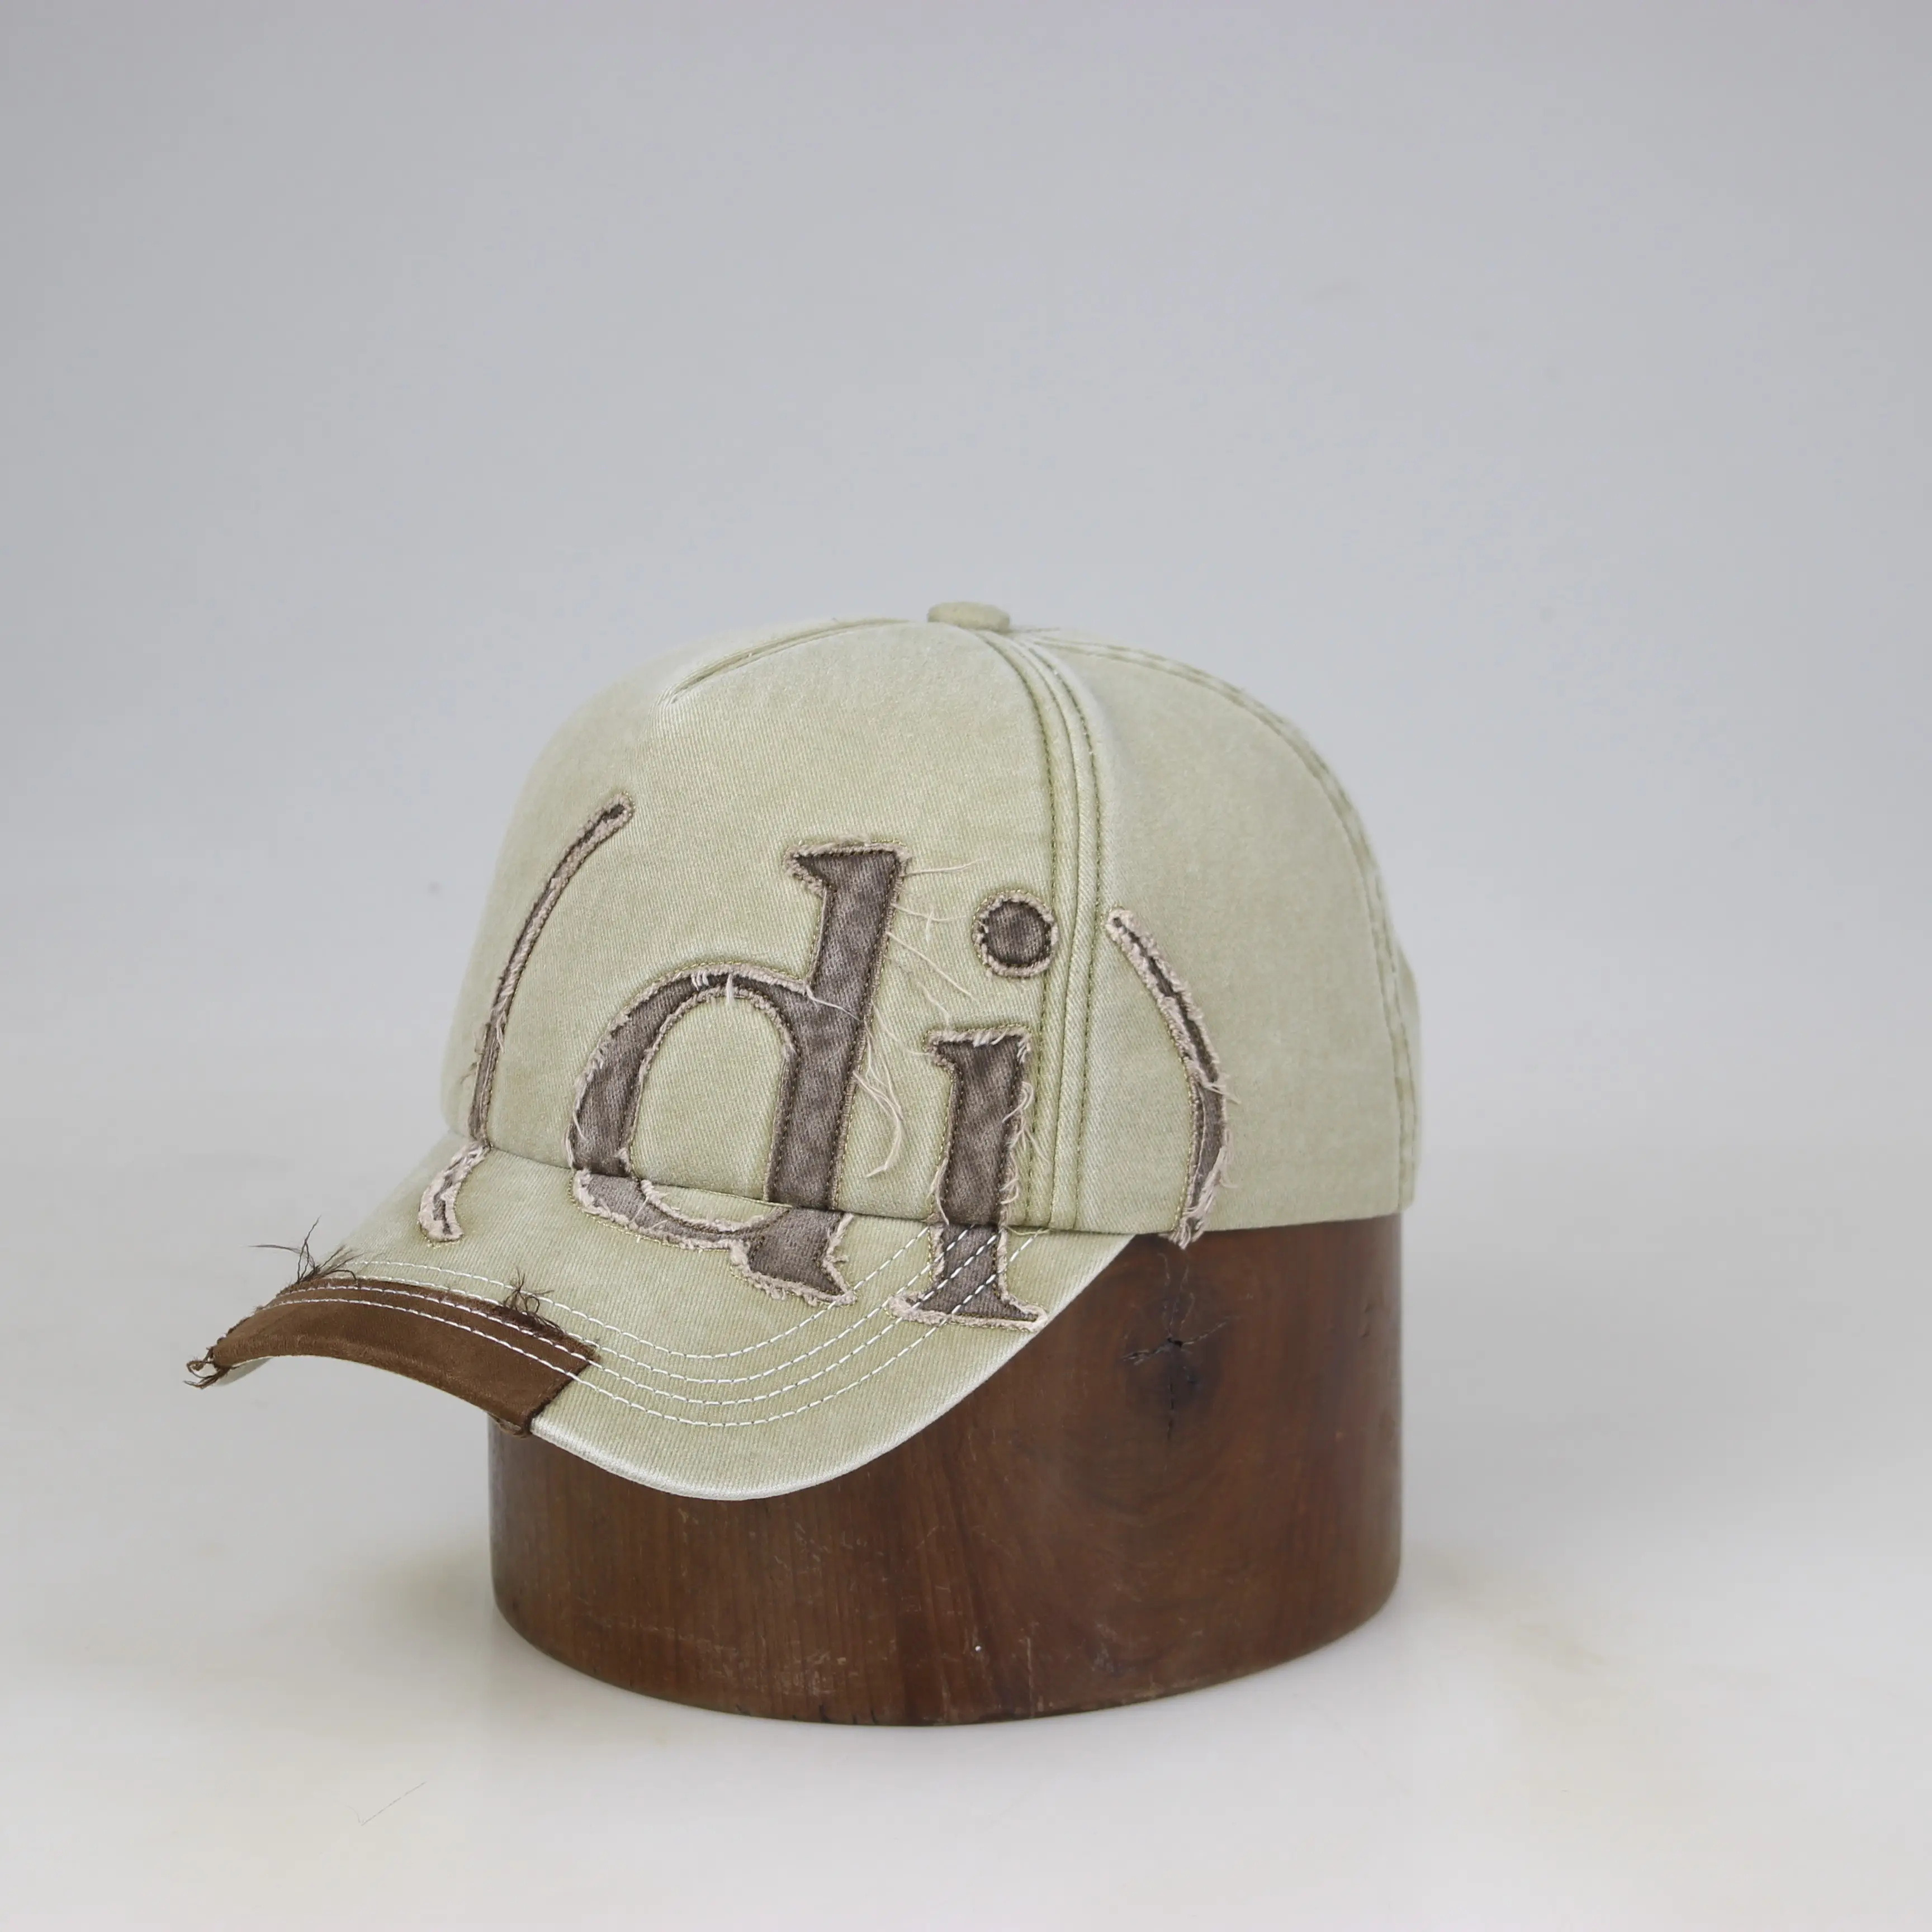 ディストレスウォッシュドコットン野球帽ヴィンテージストリートスタイルのカスタム刺繍ロゴスポーツキャップ